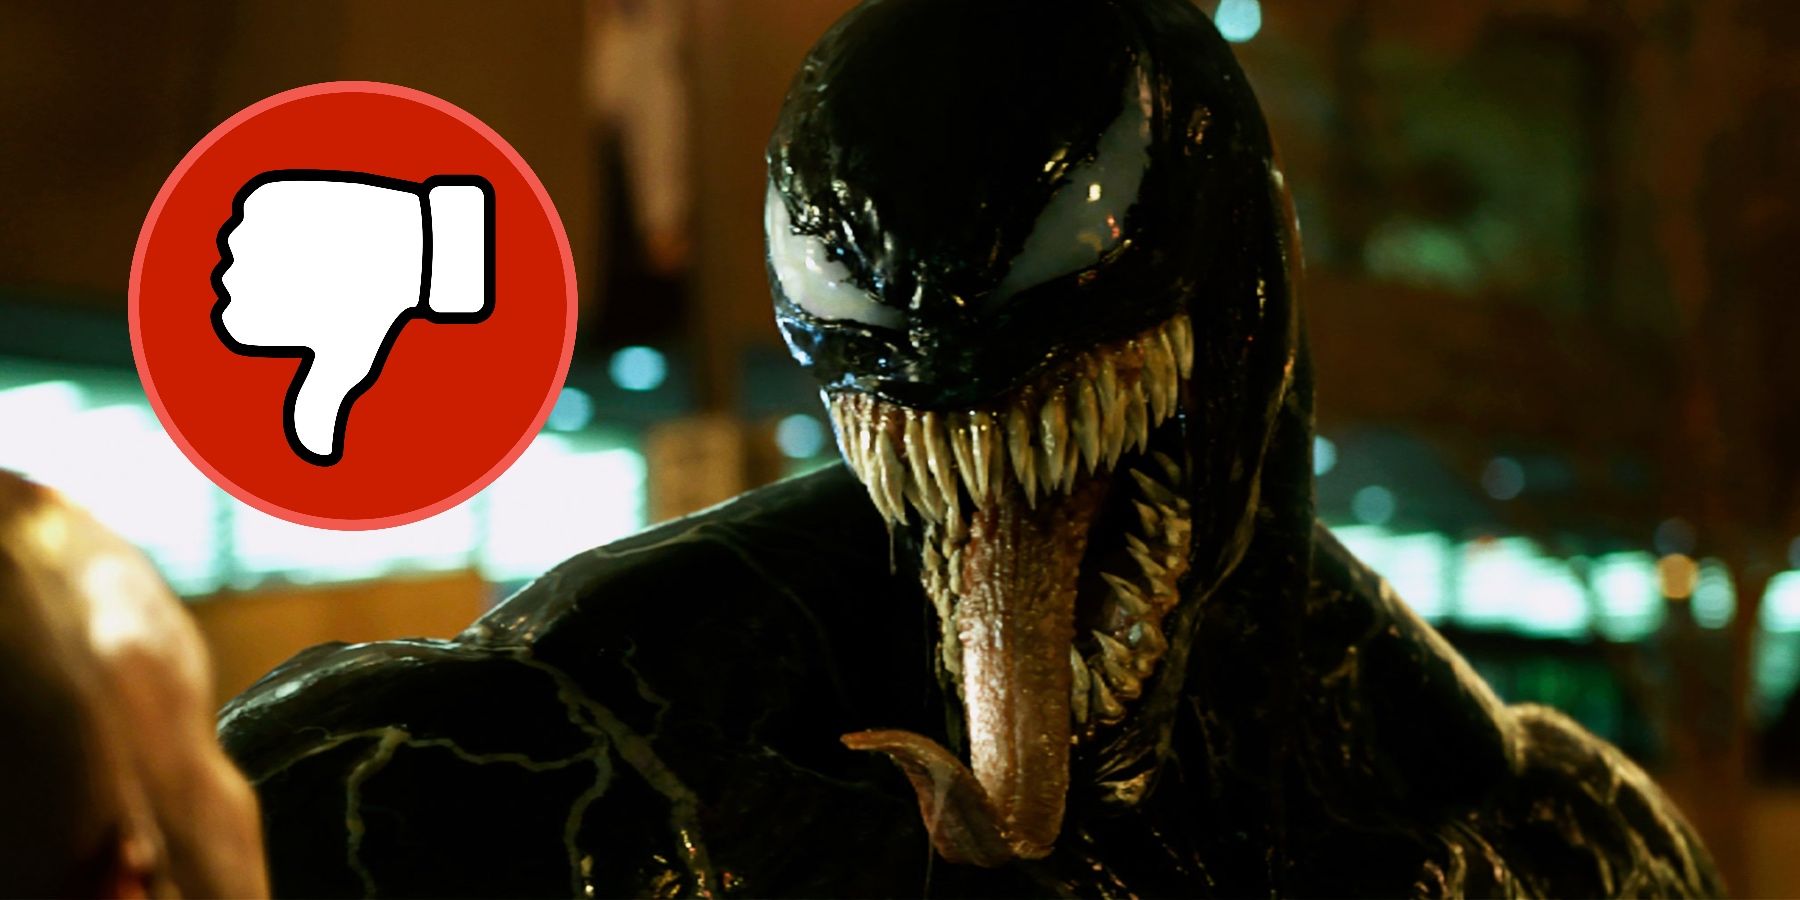 توم هاردي ينفتح على التعليقات السلبية لفيلم Venom الأول